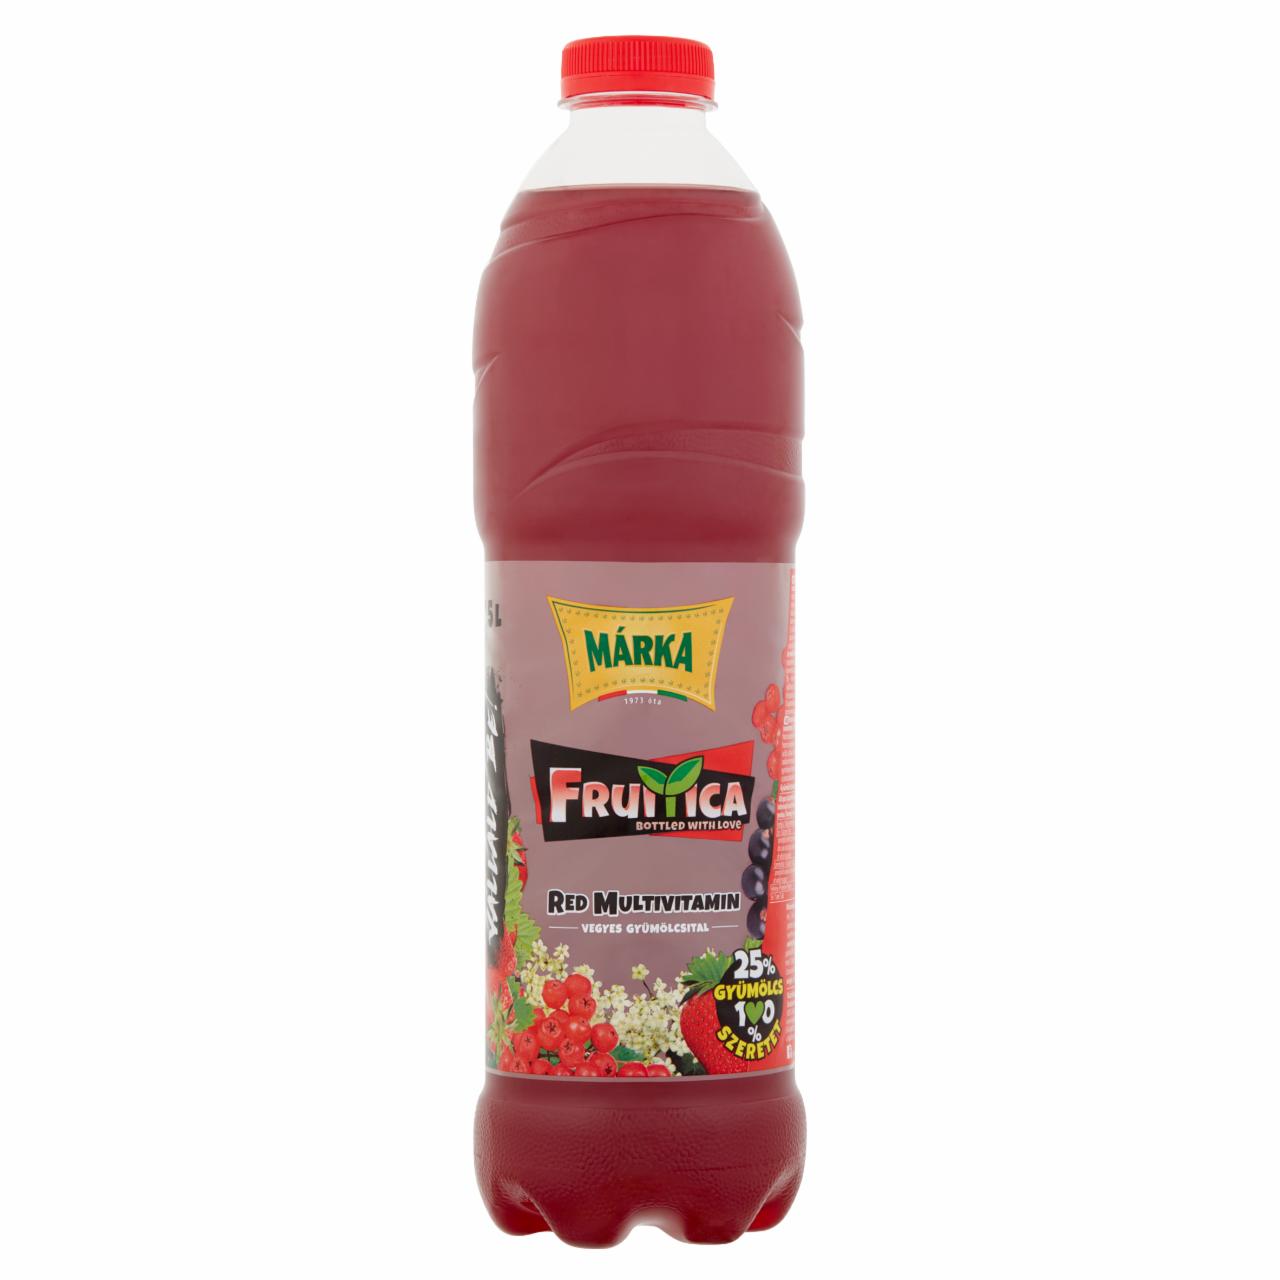 Képek - Márka Fruitica piros multivitamin szénsavmentes vegyes gyümölcsital cukorral 1,5 l